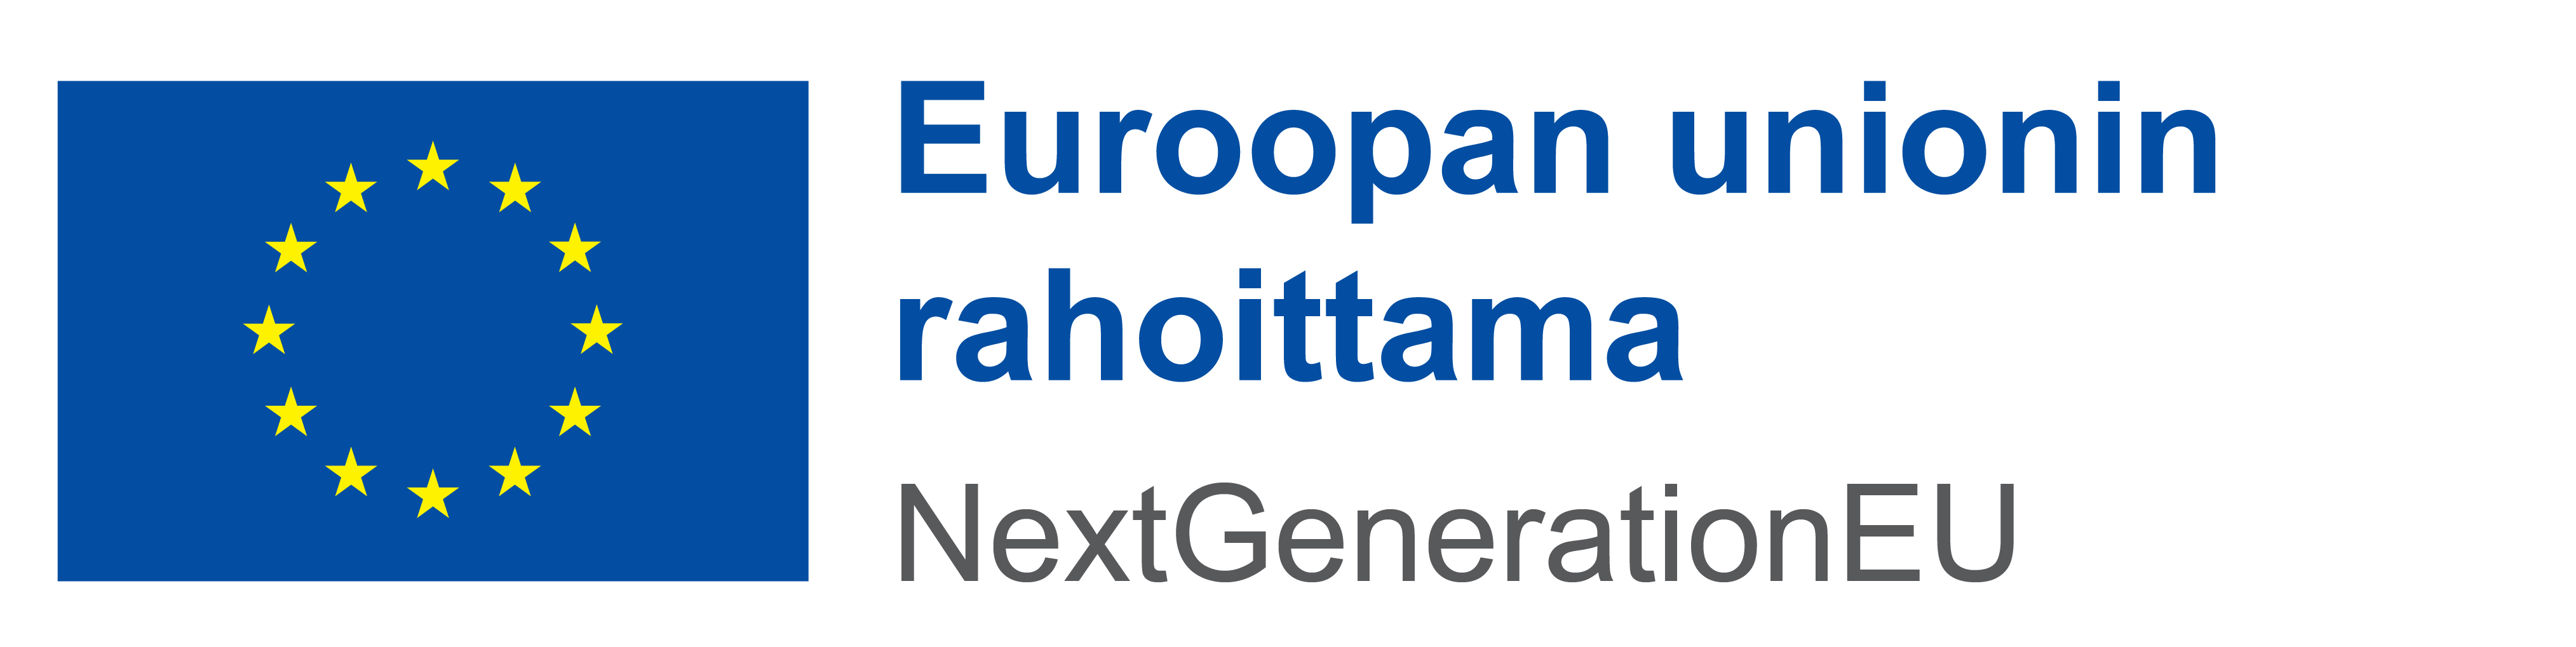 EU:n logo.jpg